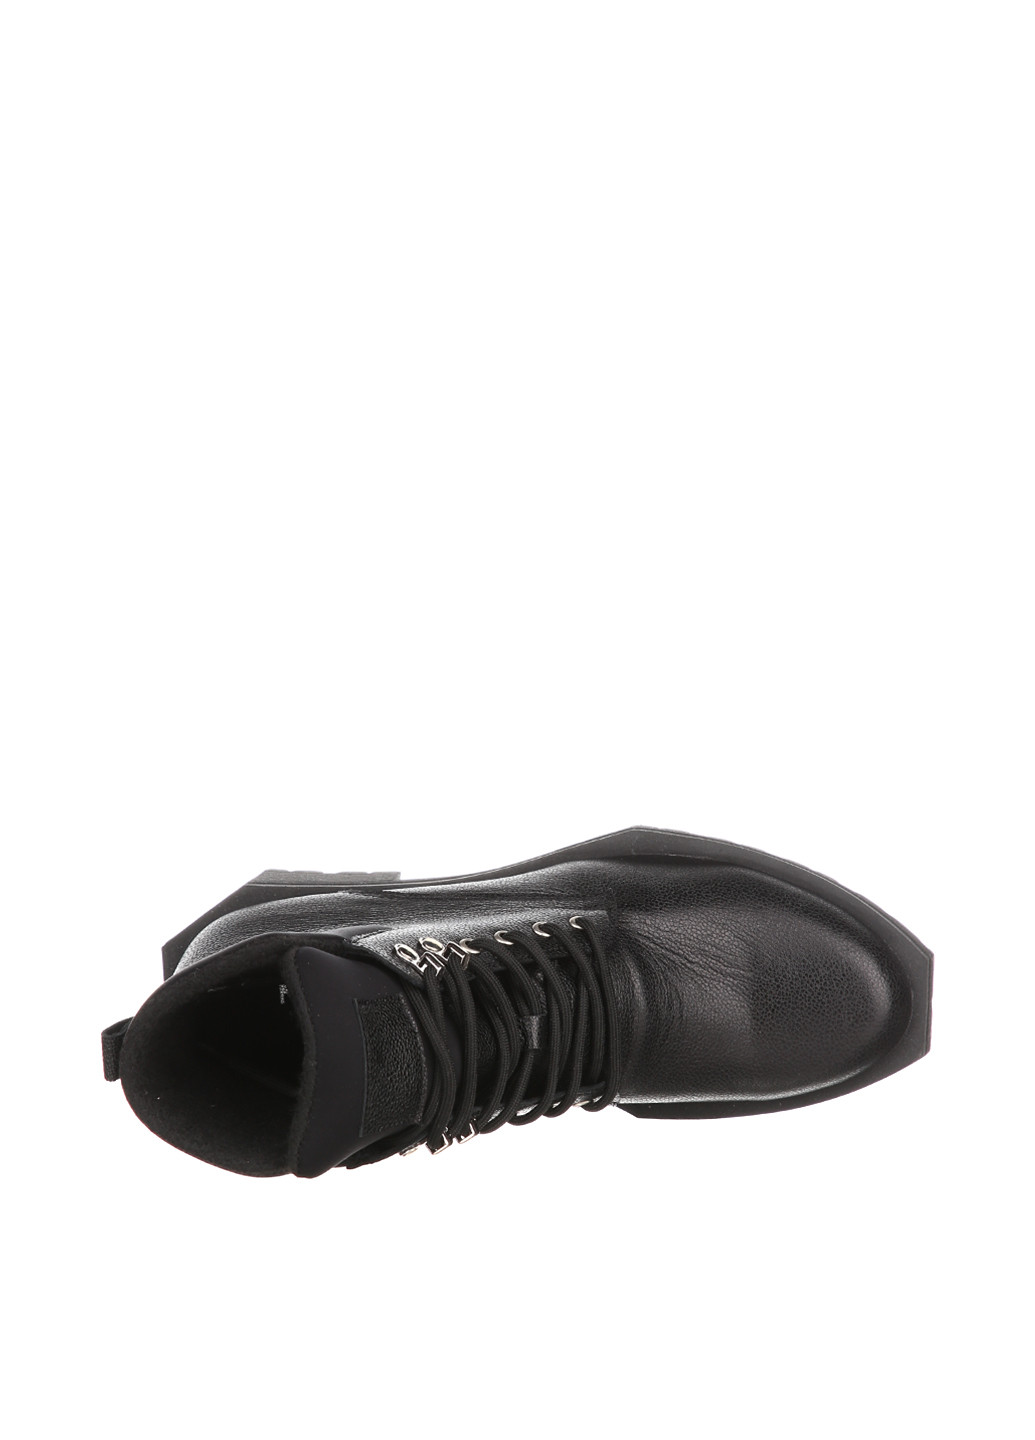 Осенние ботинки чопперы Roberto Maurizi без декора из искусственной кожи